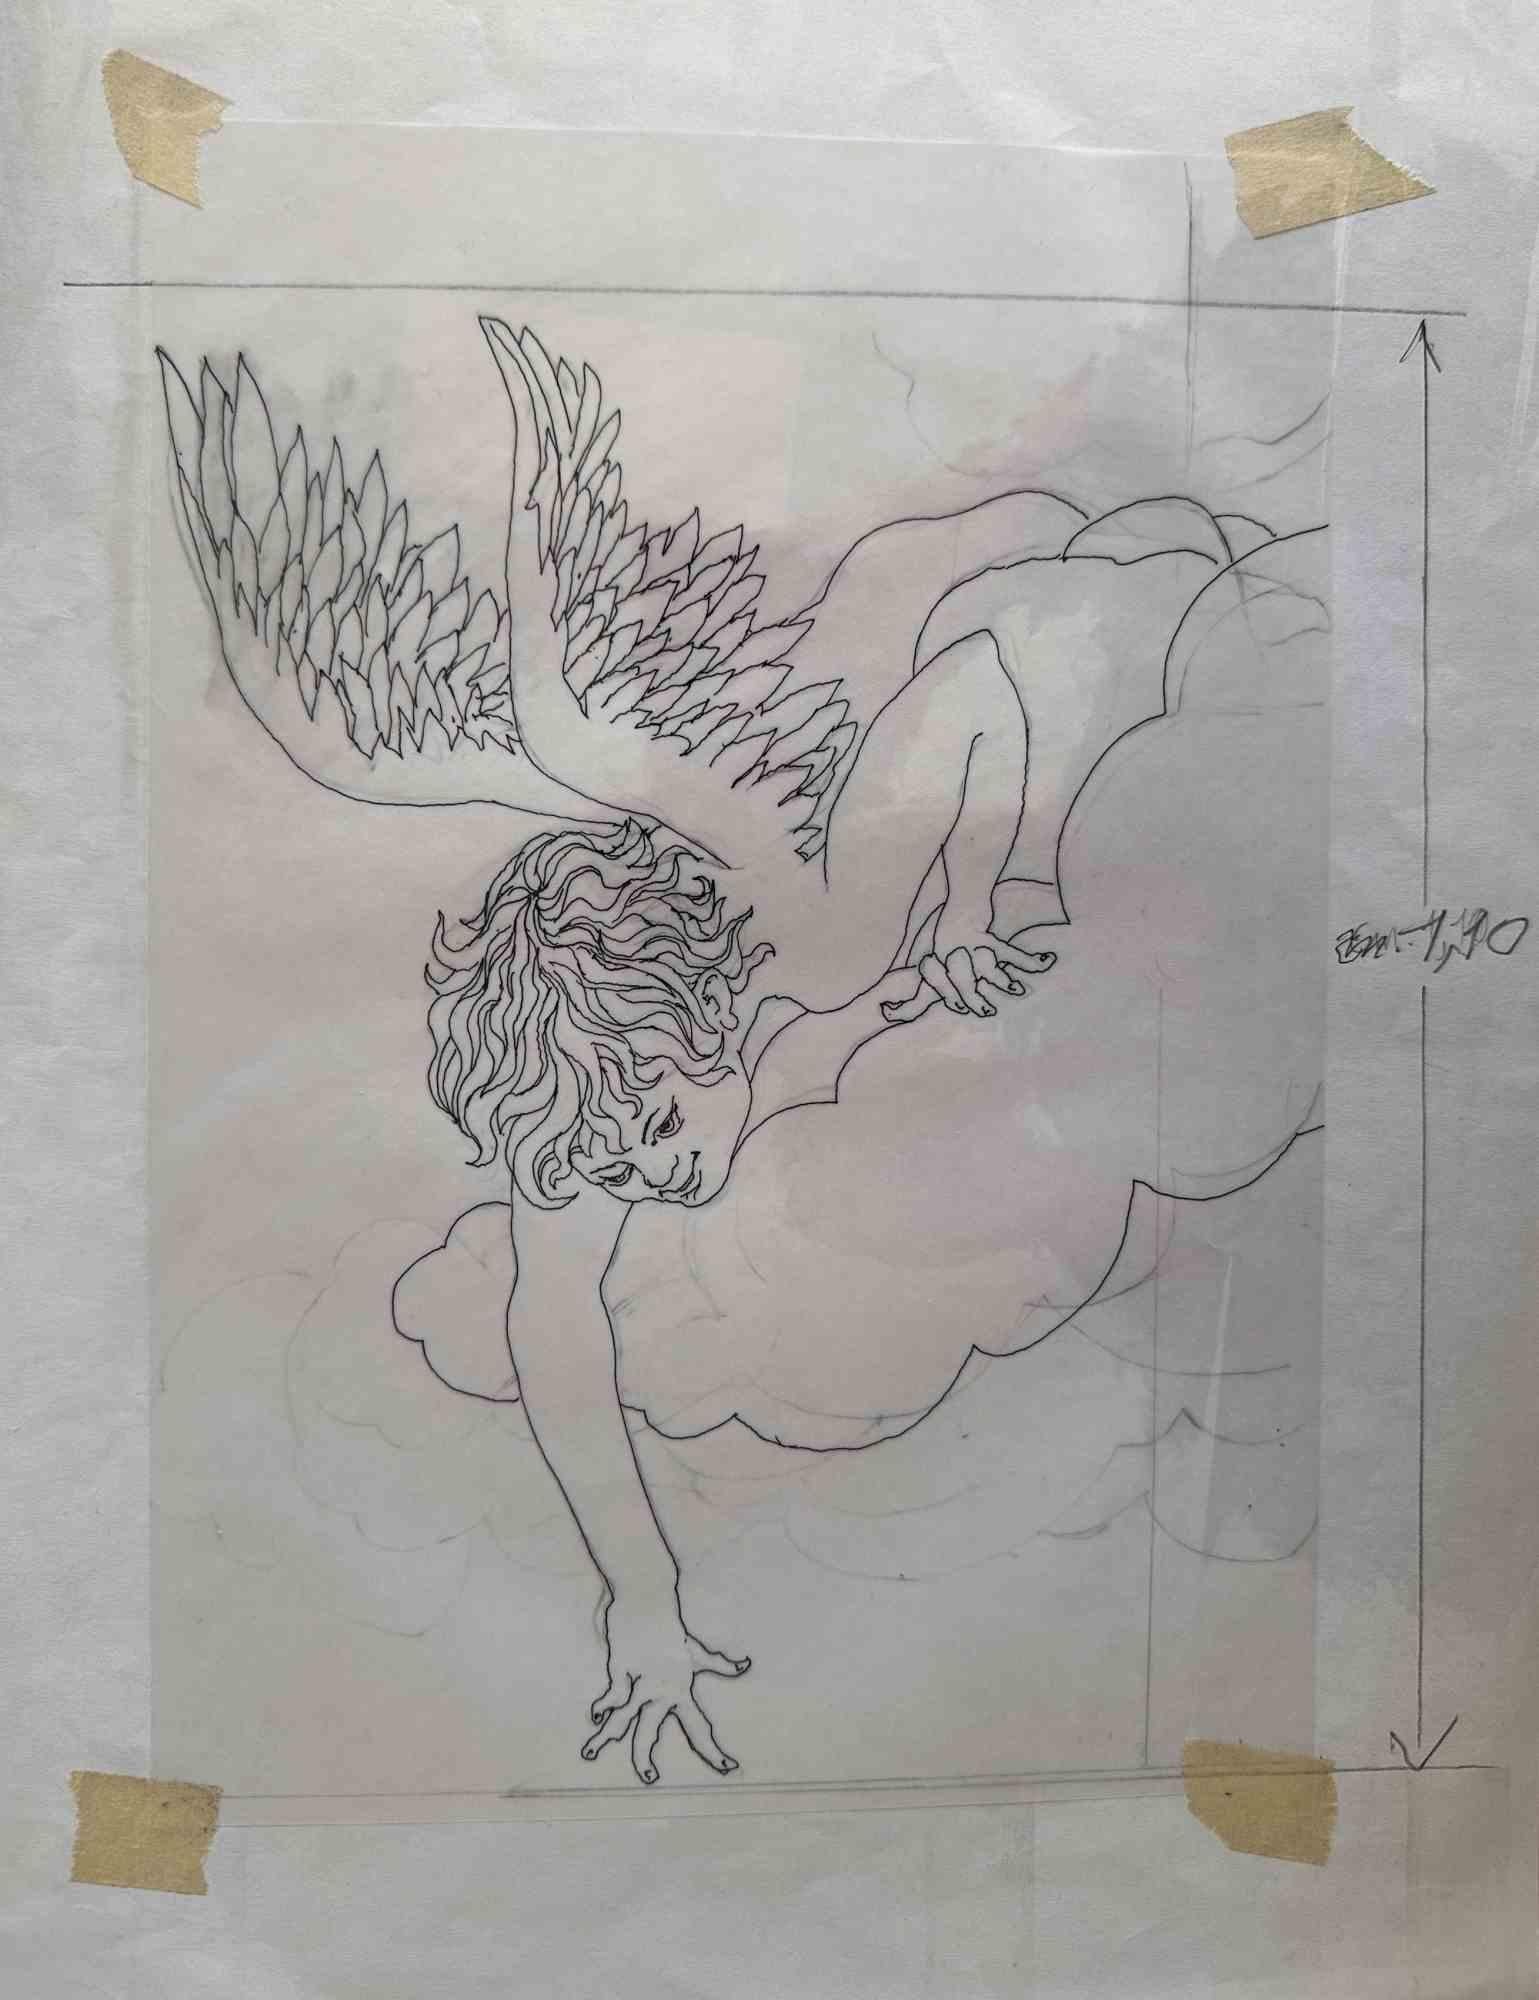 Angle on Clouds est une œuvre d'art moderne réalisée par Leo Guida dans les années 1970.

Bon état.

Dessin à l'encre sur papier.

Leo Guida a su tisser un entretien productif sur l'art et la fonction de l'artiste avec de nombreuses générations de